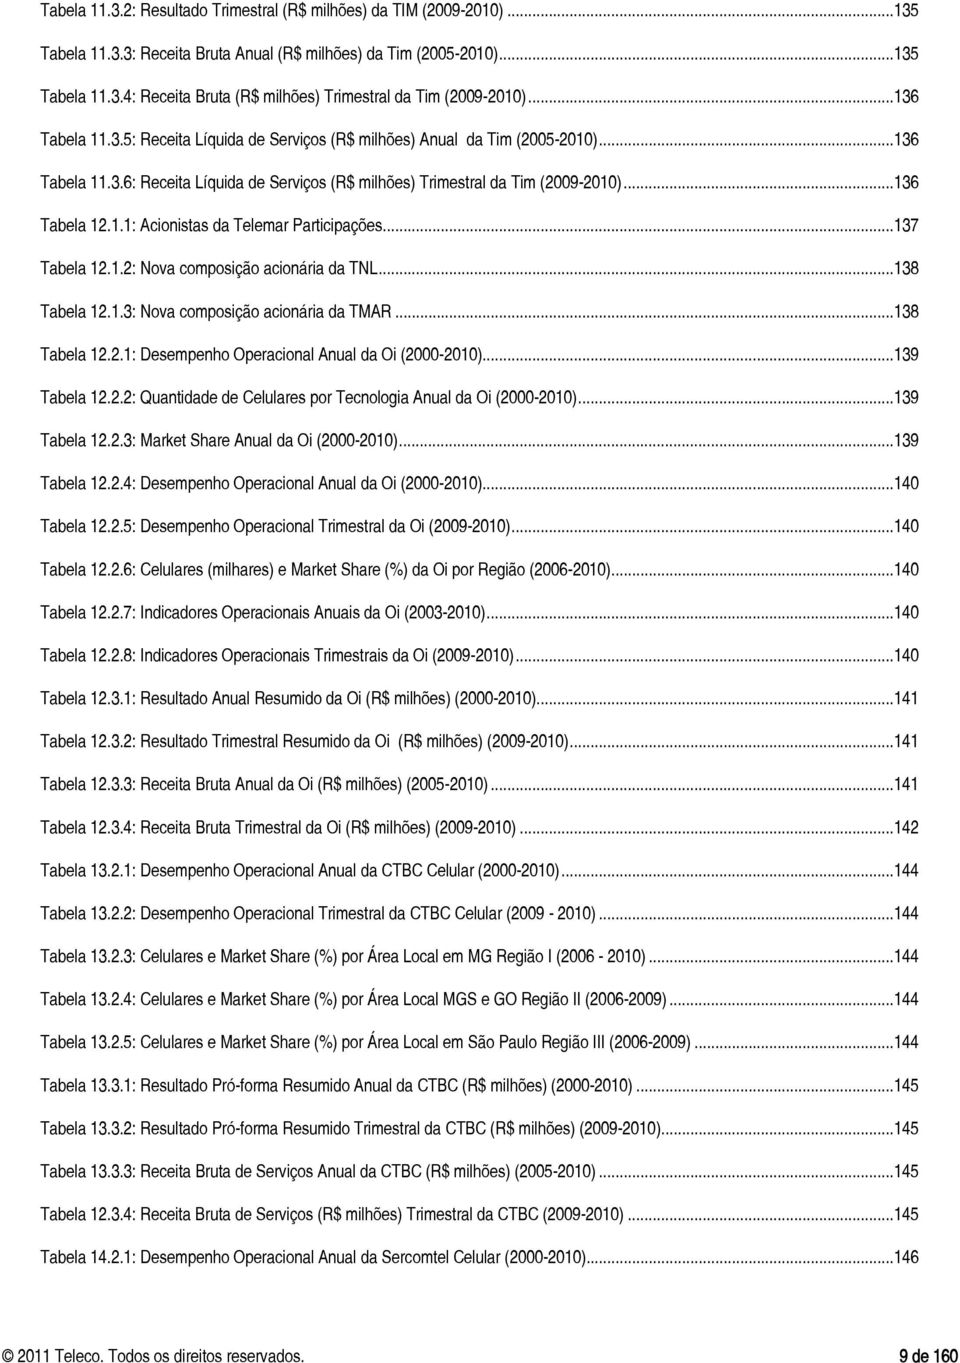 .. 137 Tabela 12.1.2: Nova composição acionária da TNL... 138 Tabela 12.1.3: Nova composição acionária da TMAR... 138 Tabela 12.2.1: Desempenho Operacional Anual da Oi (2000-2010)... 139 Tabela 12.2.2: Quantidade de Celulares por Tecnologia Anual da Oi (2000-2010).